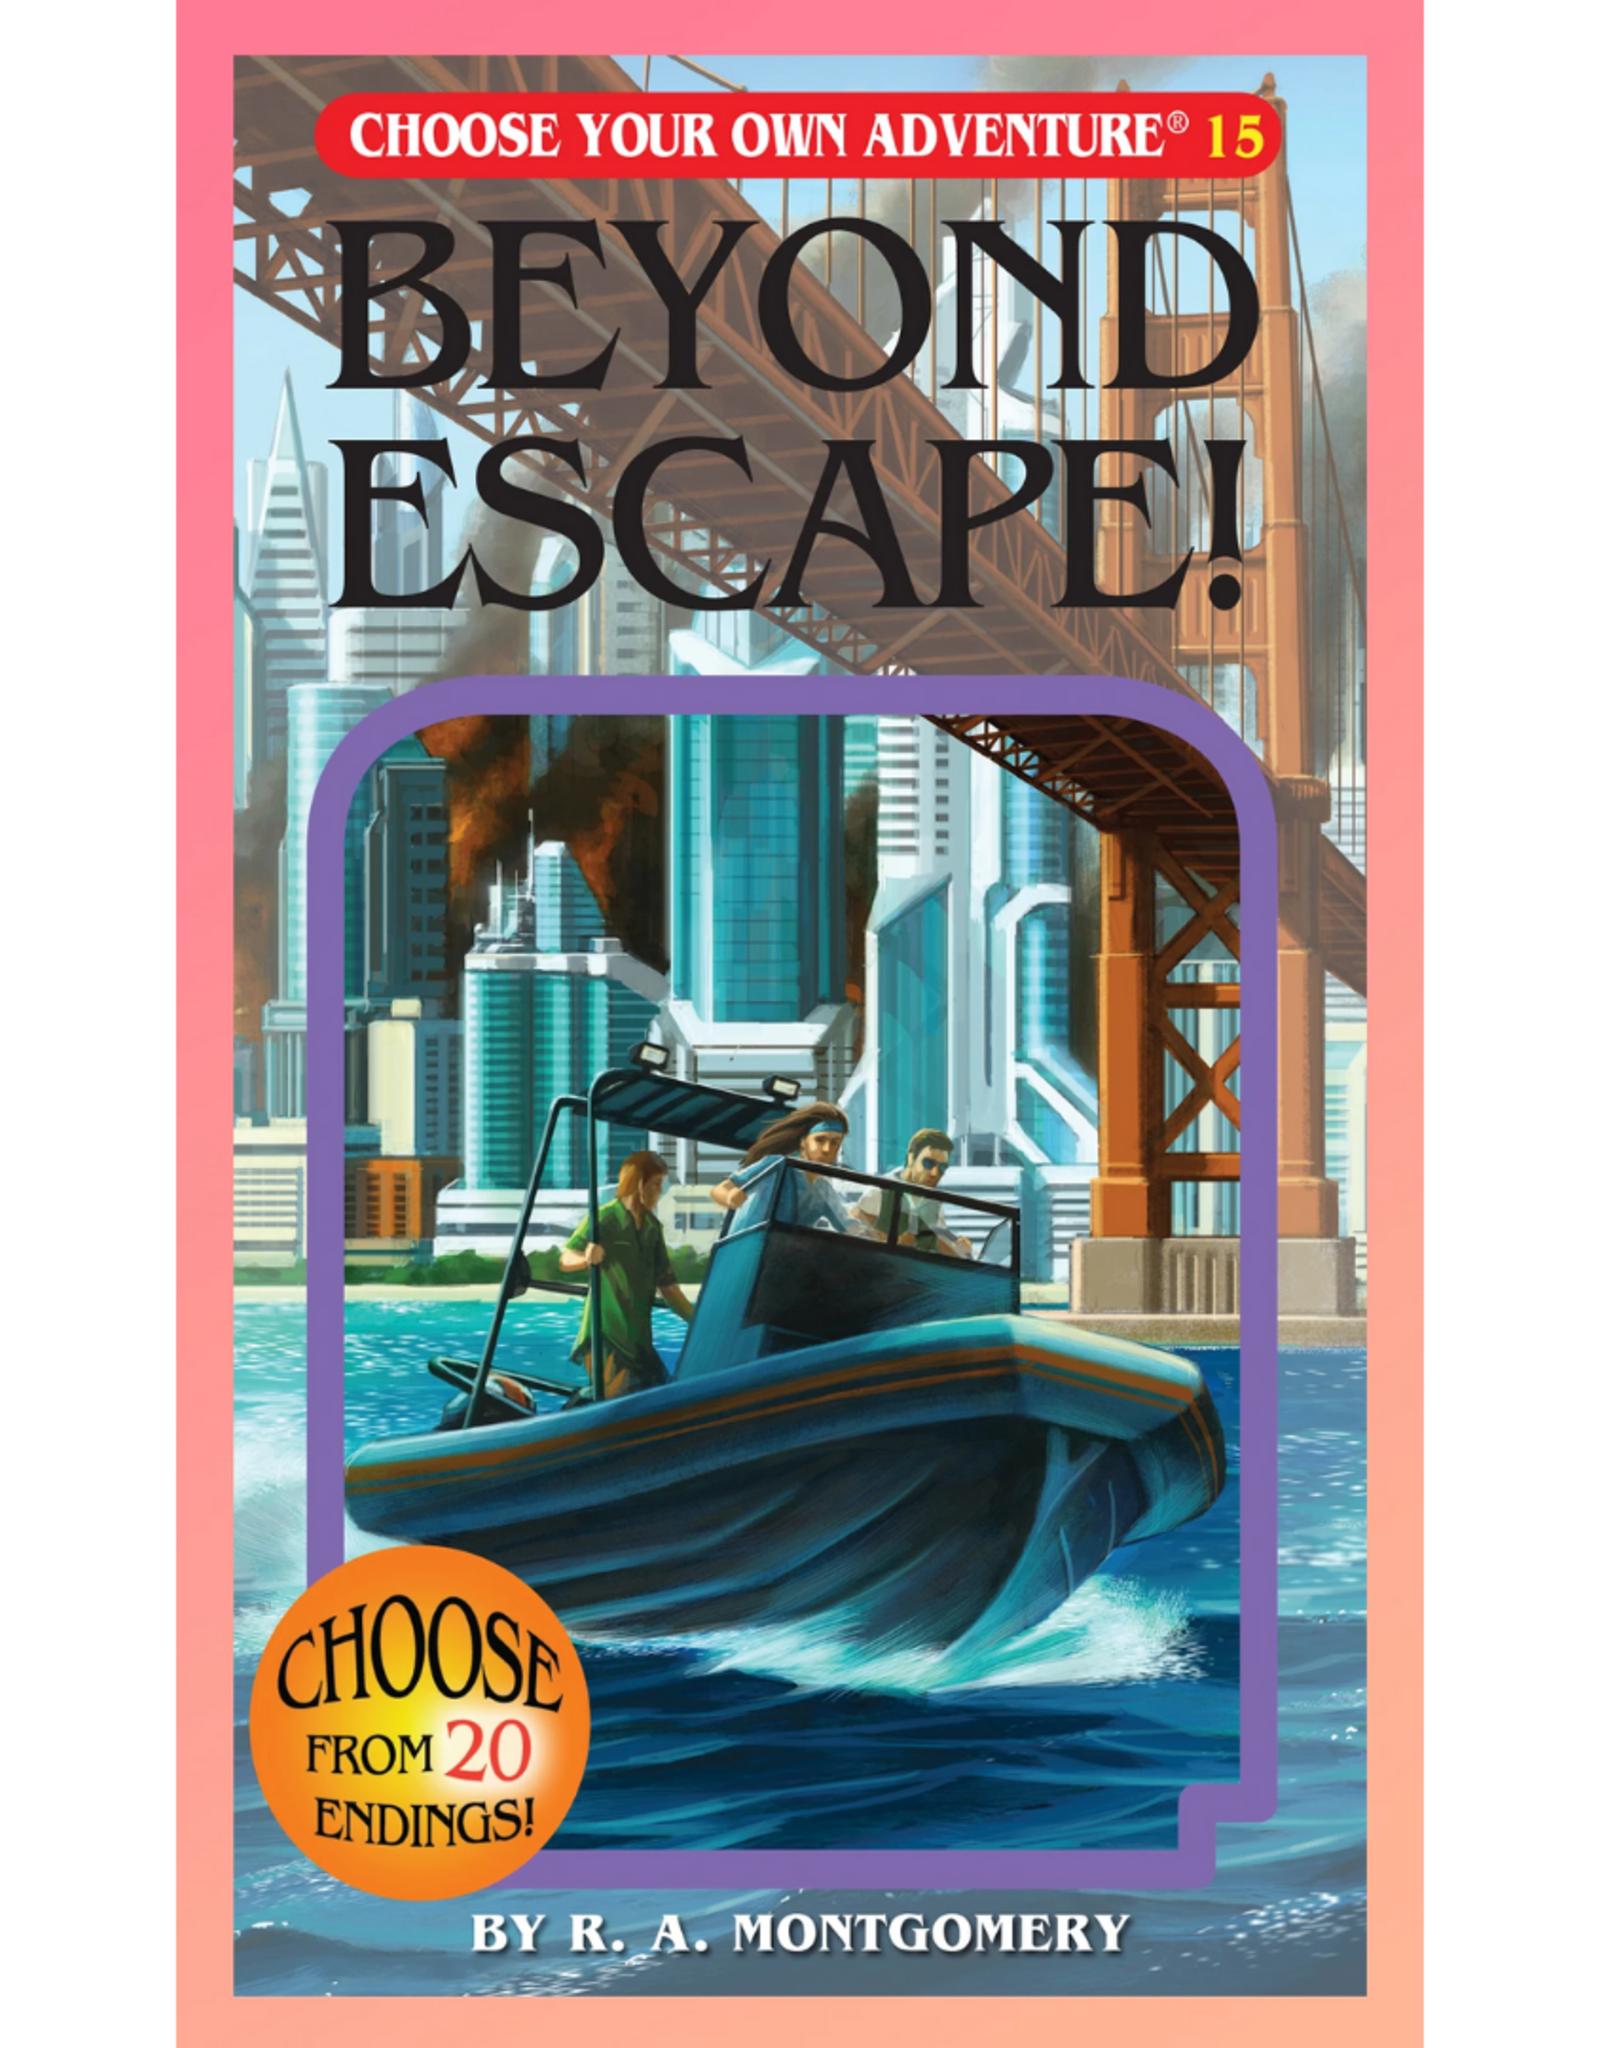 Beyond Escape!